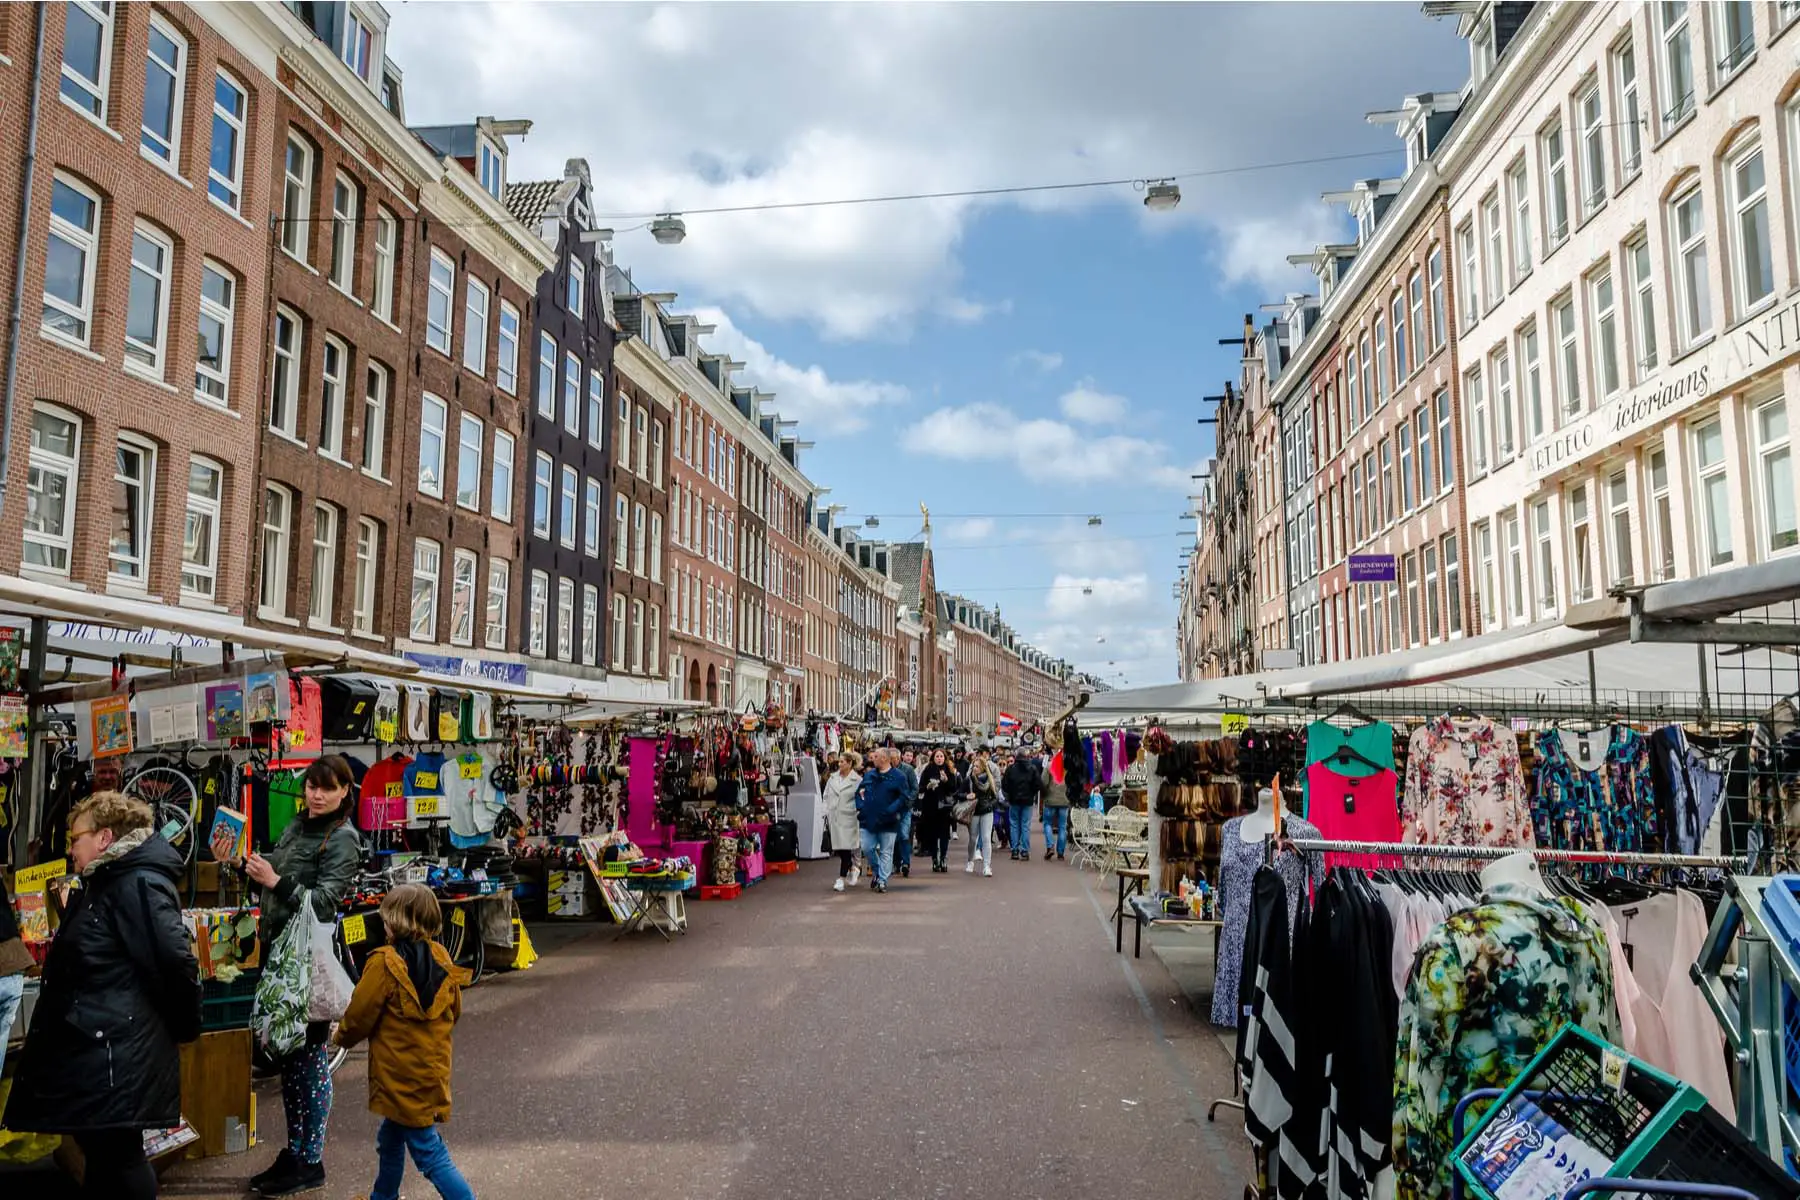 albert cuypmarkt, a popular day market in Amsterdam's De Pijp neighborhood